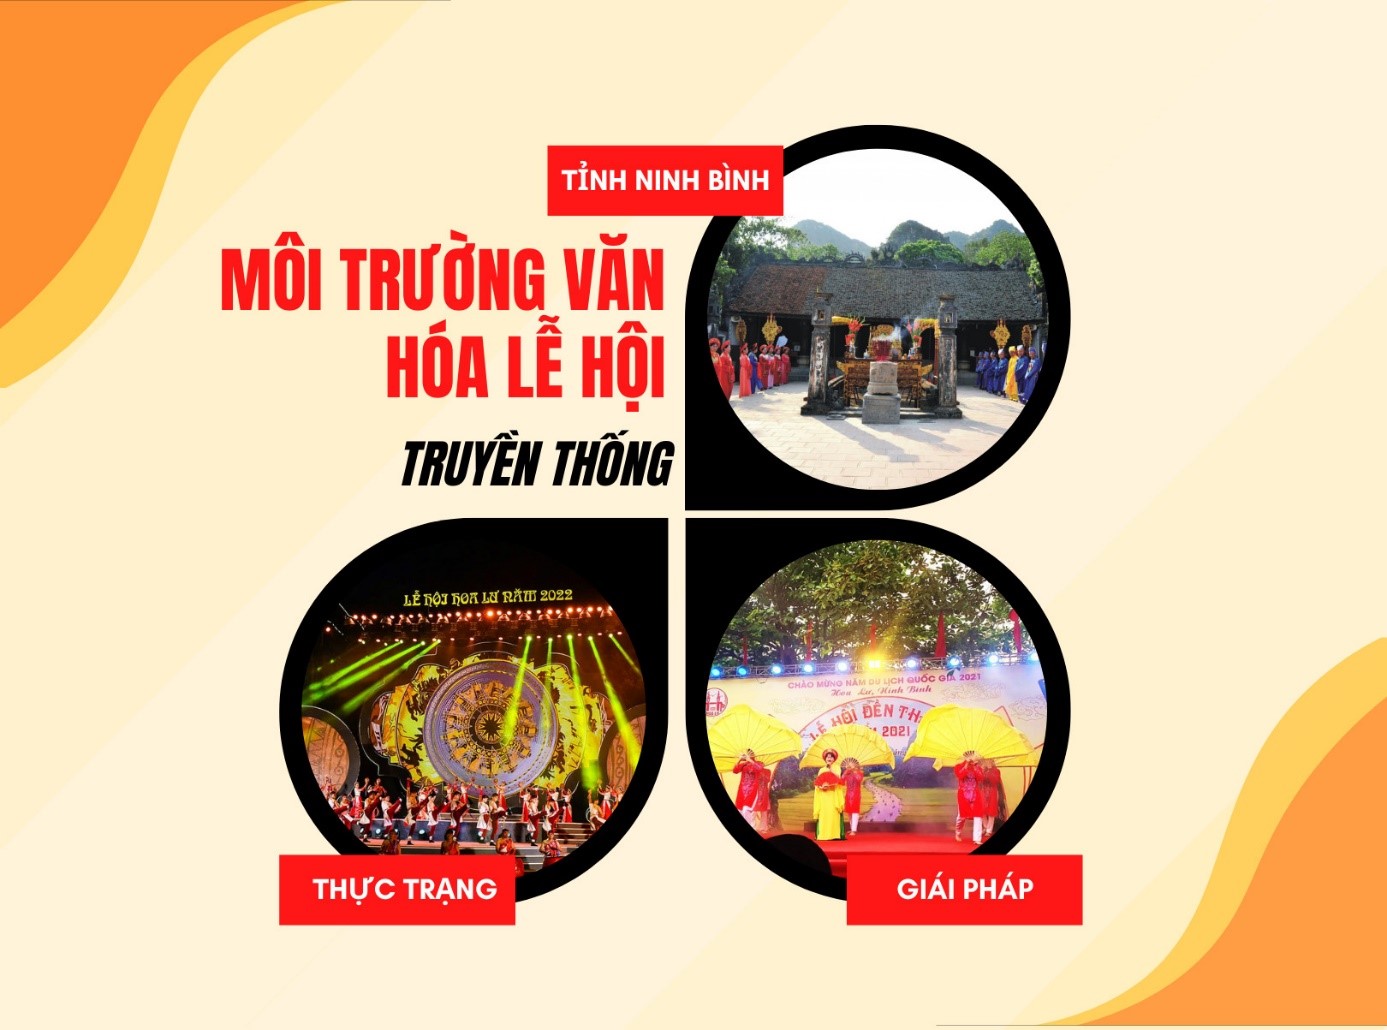 Môi trường văn hóa lễ hội truyền thống trên địa bàn tỉnh Ninh Bình - thực trạng và giải pháp